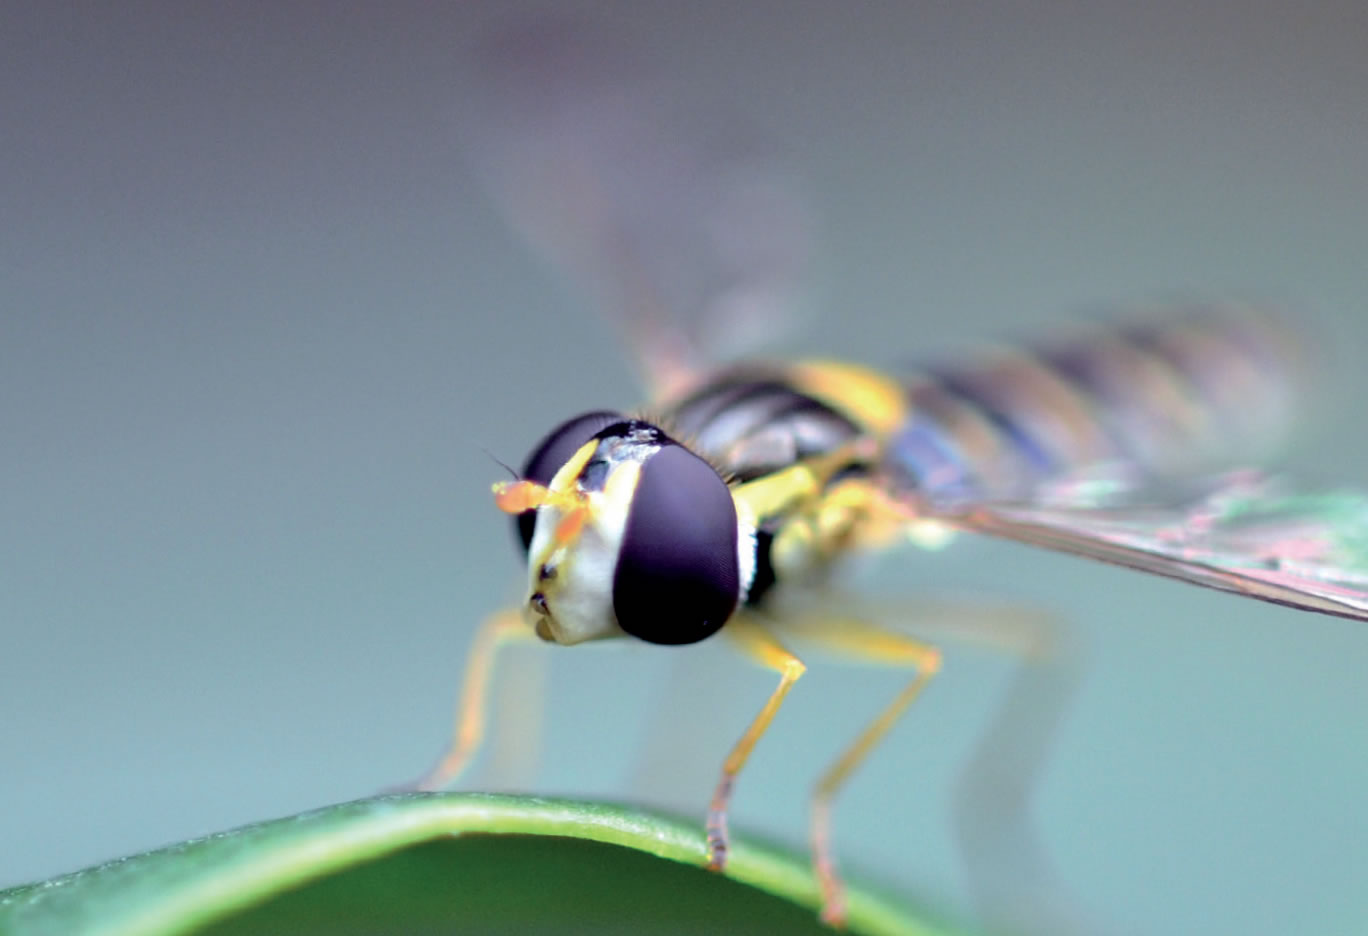 Suivi photographique des insectes pollinisateurs